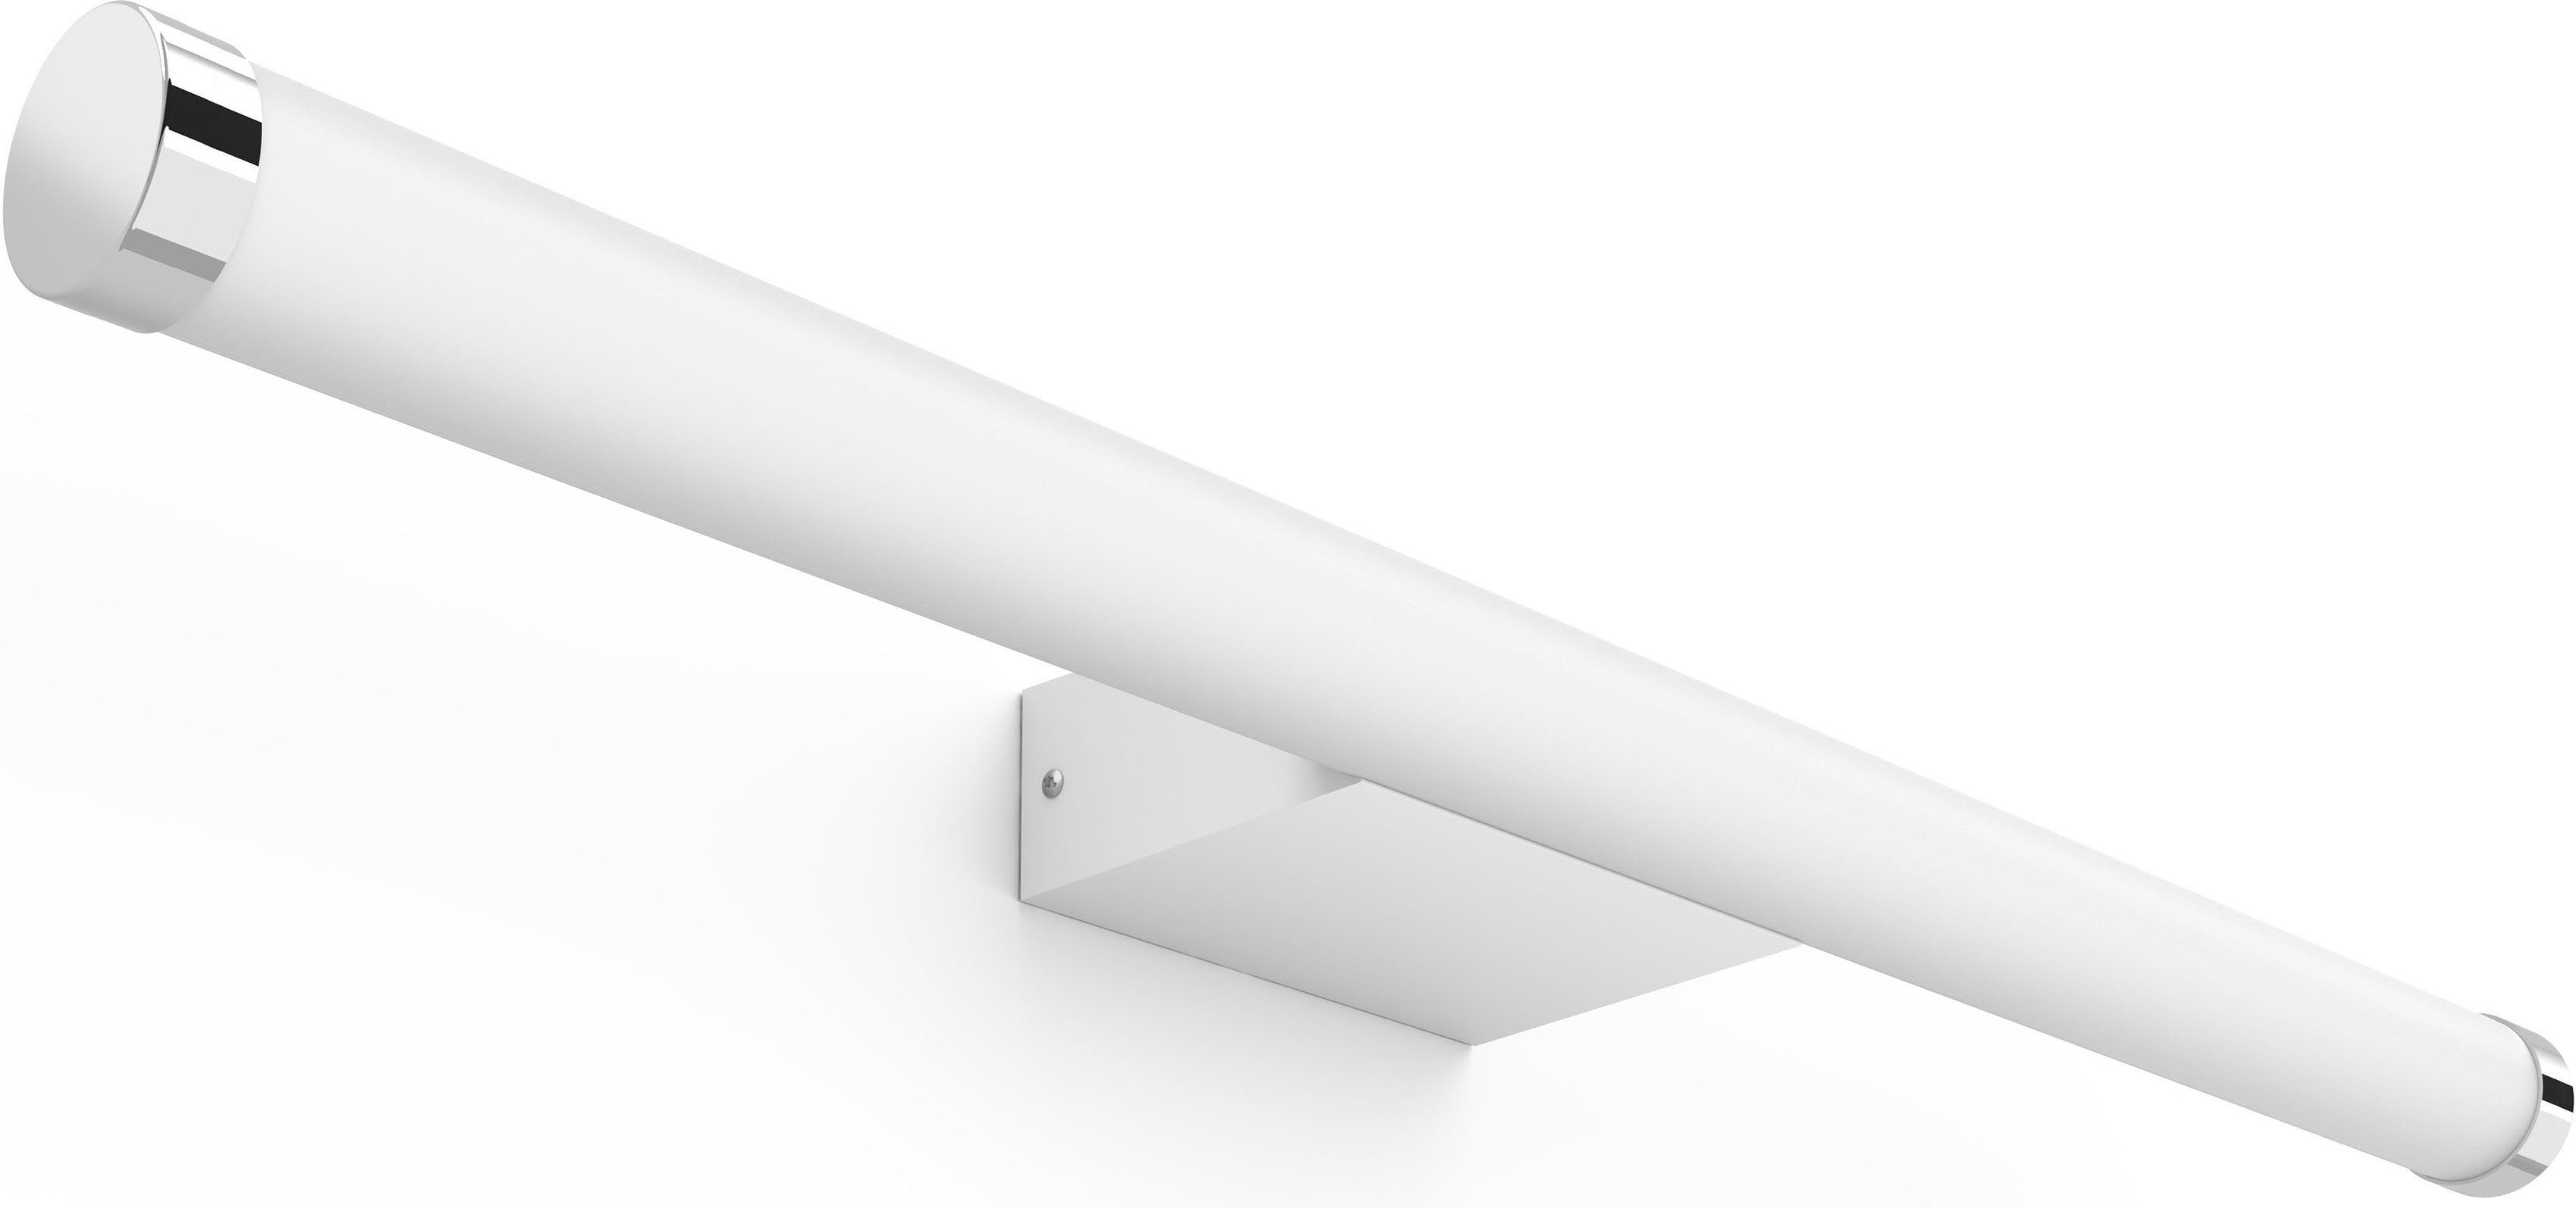 Philips Hue LED Wandleuchte Adore, fest LED Funktionen kompl. Nutze Light mit integriert, das Hue Warmweiß, Spektrum Smart Bridge der